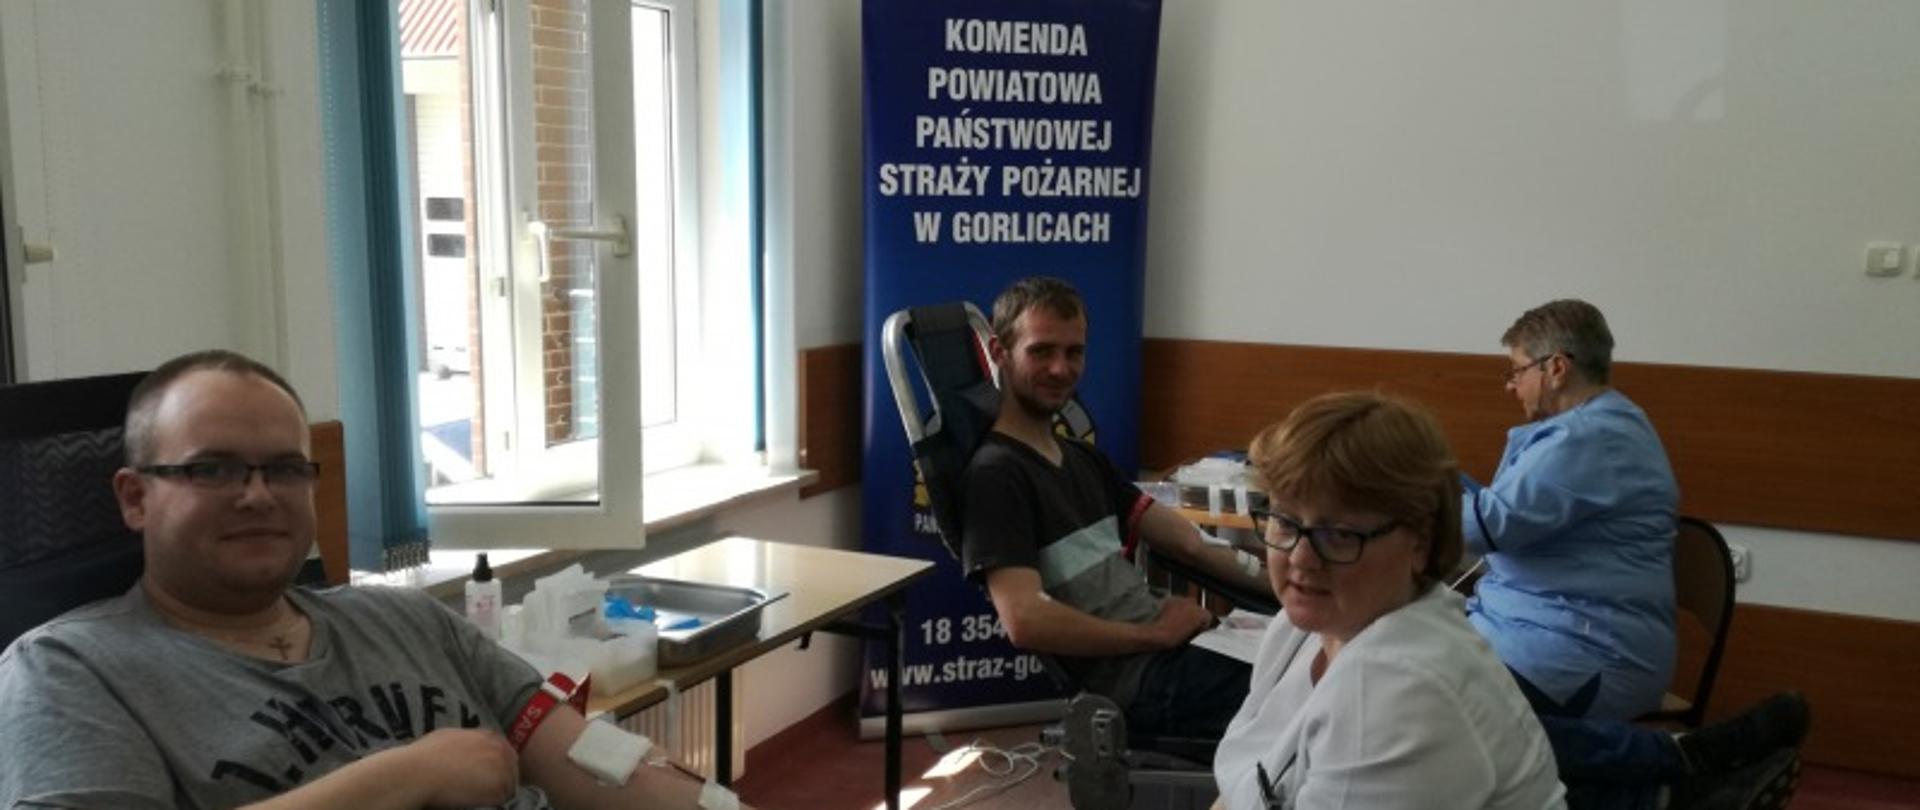 Na zdjęciu widoczne dwie osoby siedzące na fotelach w pomieszczeniu oddające krew przy nich pielęgniarki z Regionalnego Centrum Krwiodawstwa i Krwiolecznictwa z Oddziału Terenowego w Gorlicach